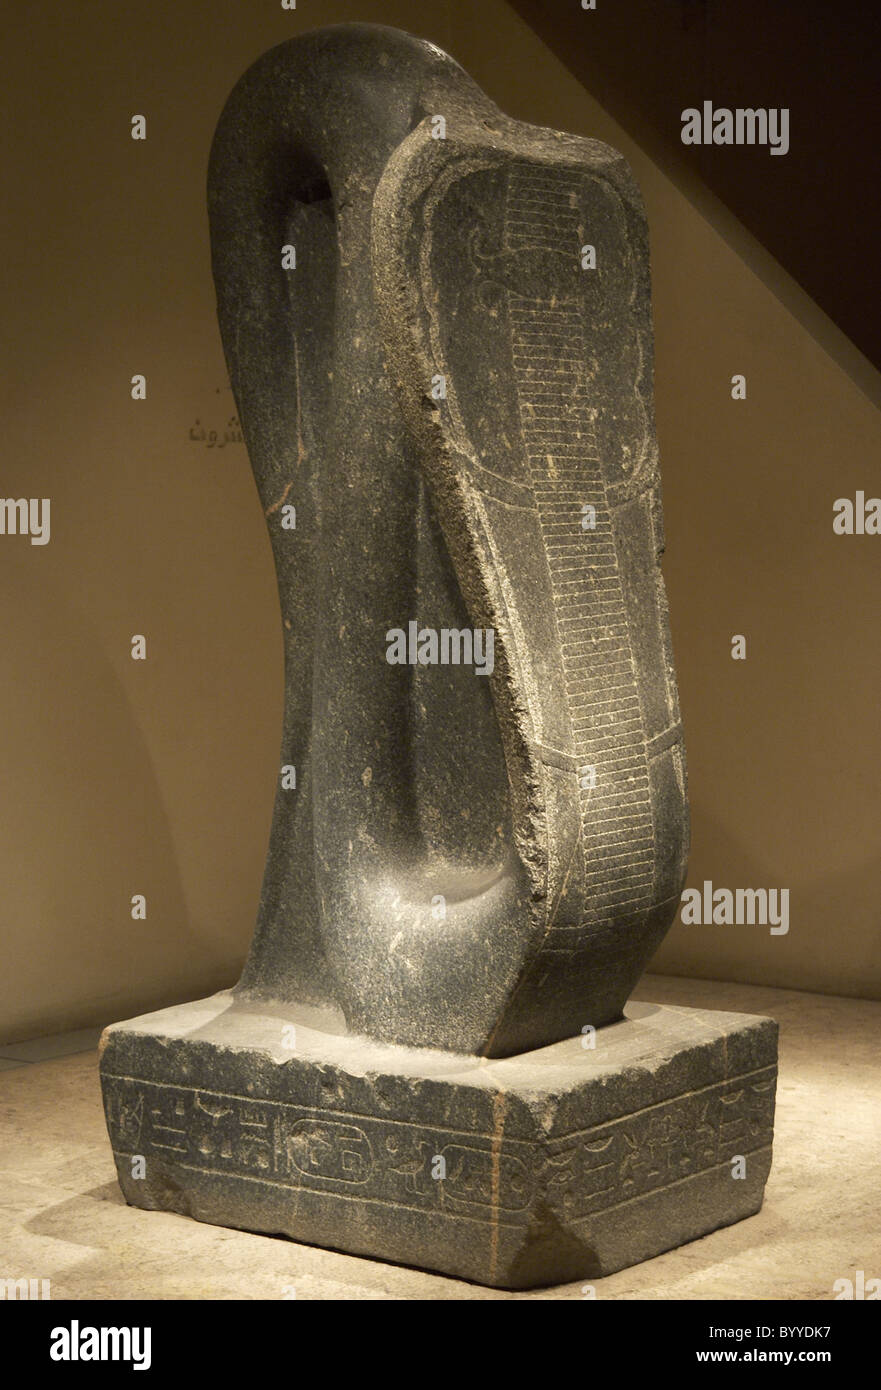 L'art égyptien Cobra d'Amon-Ra. Le règne de pharaons nubiens. 25e dynastie. Troisième période intermédiaire. Le Musée de Louxor. L'Égypte. Banque D'Images